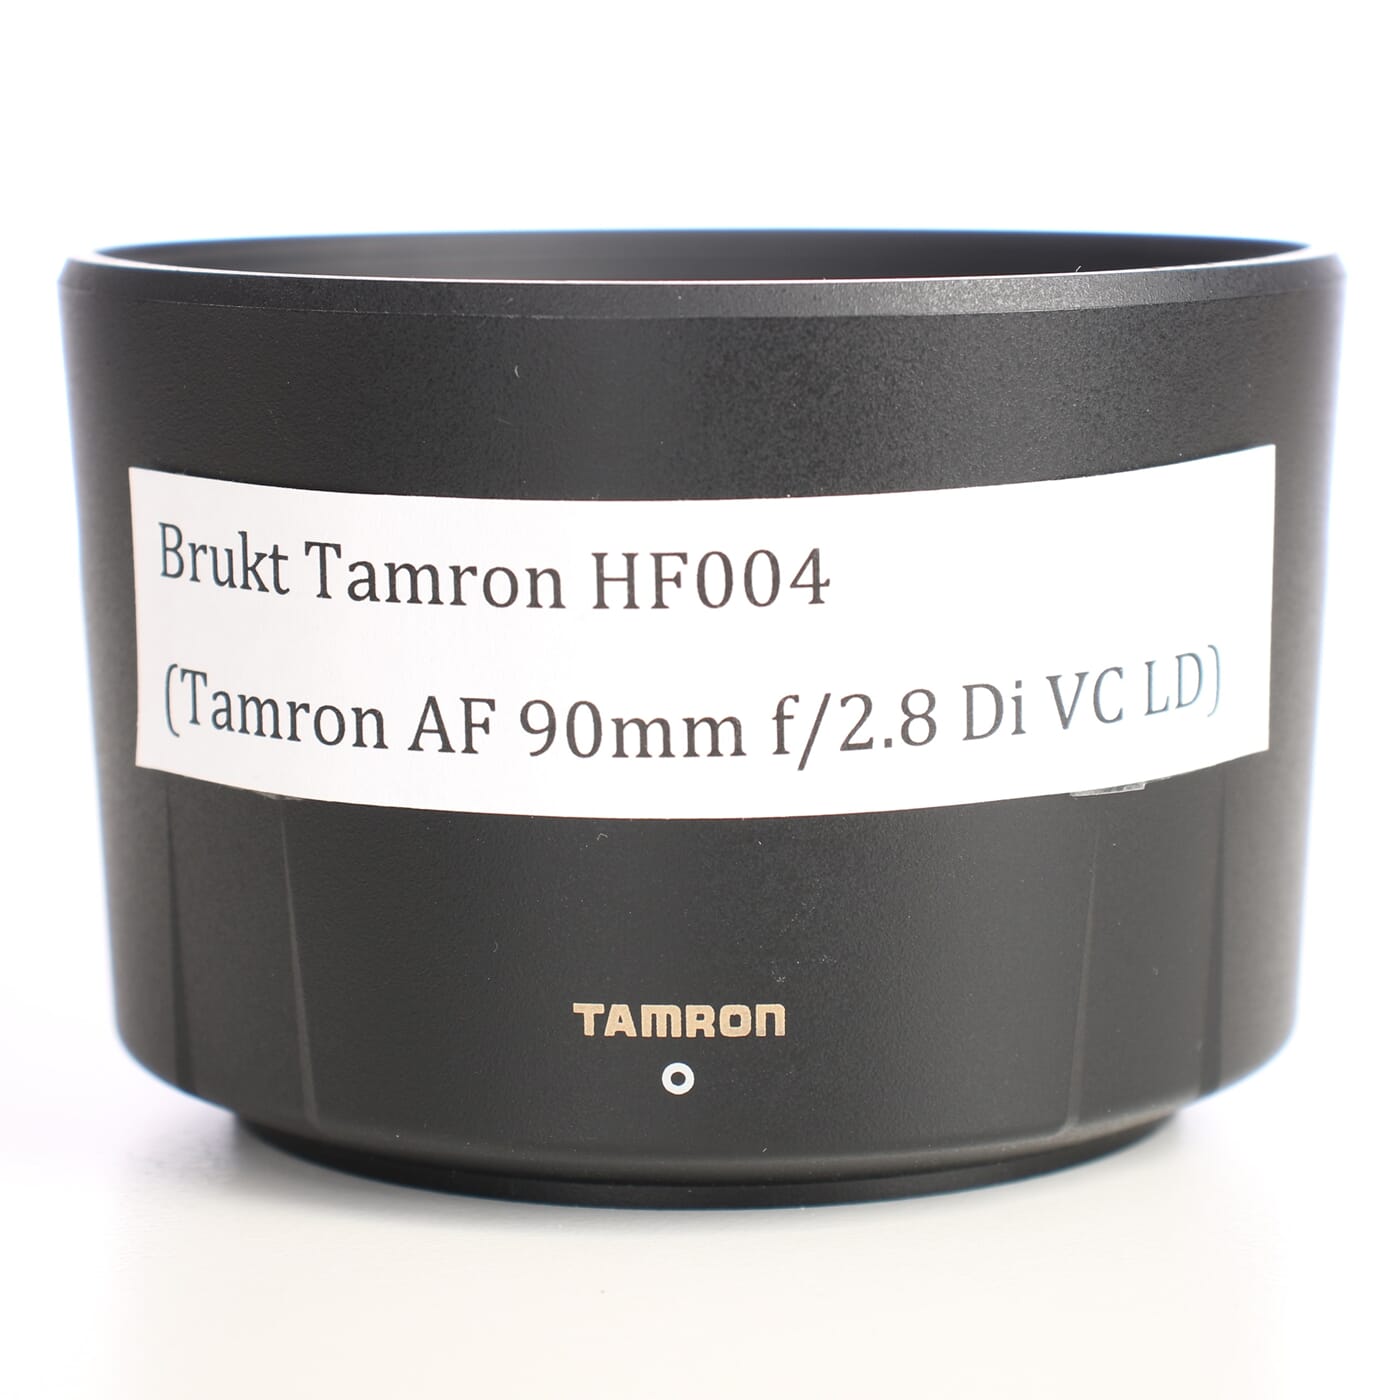 Brukt solblender Tamron HF004(Tamron AF 90mm f/2.8 Di VC LD)